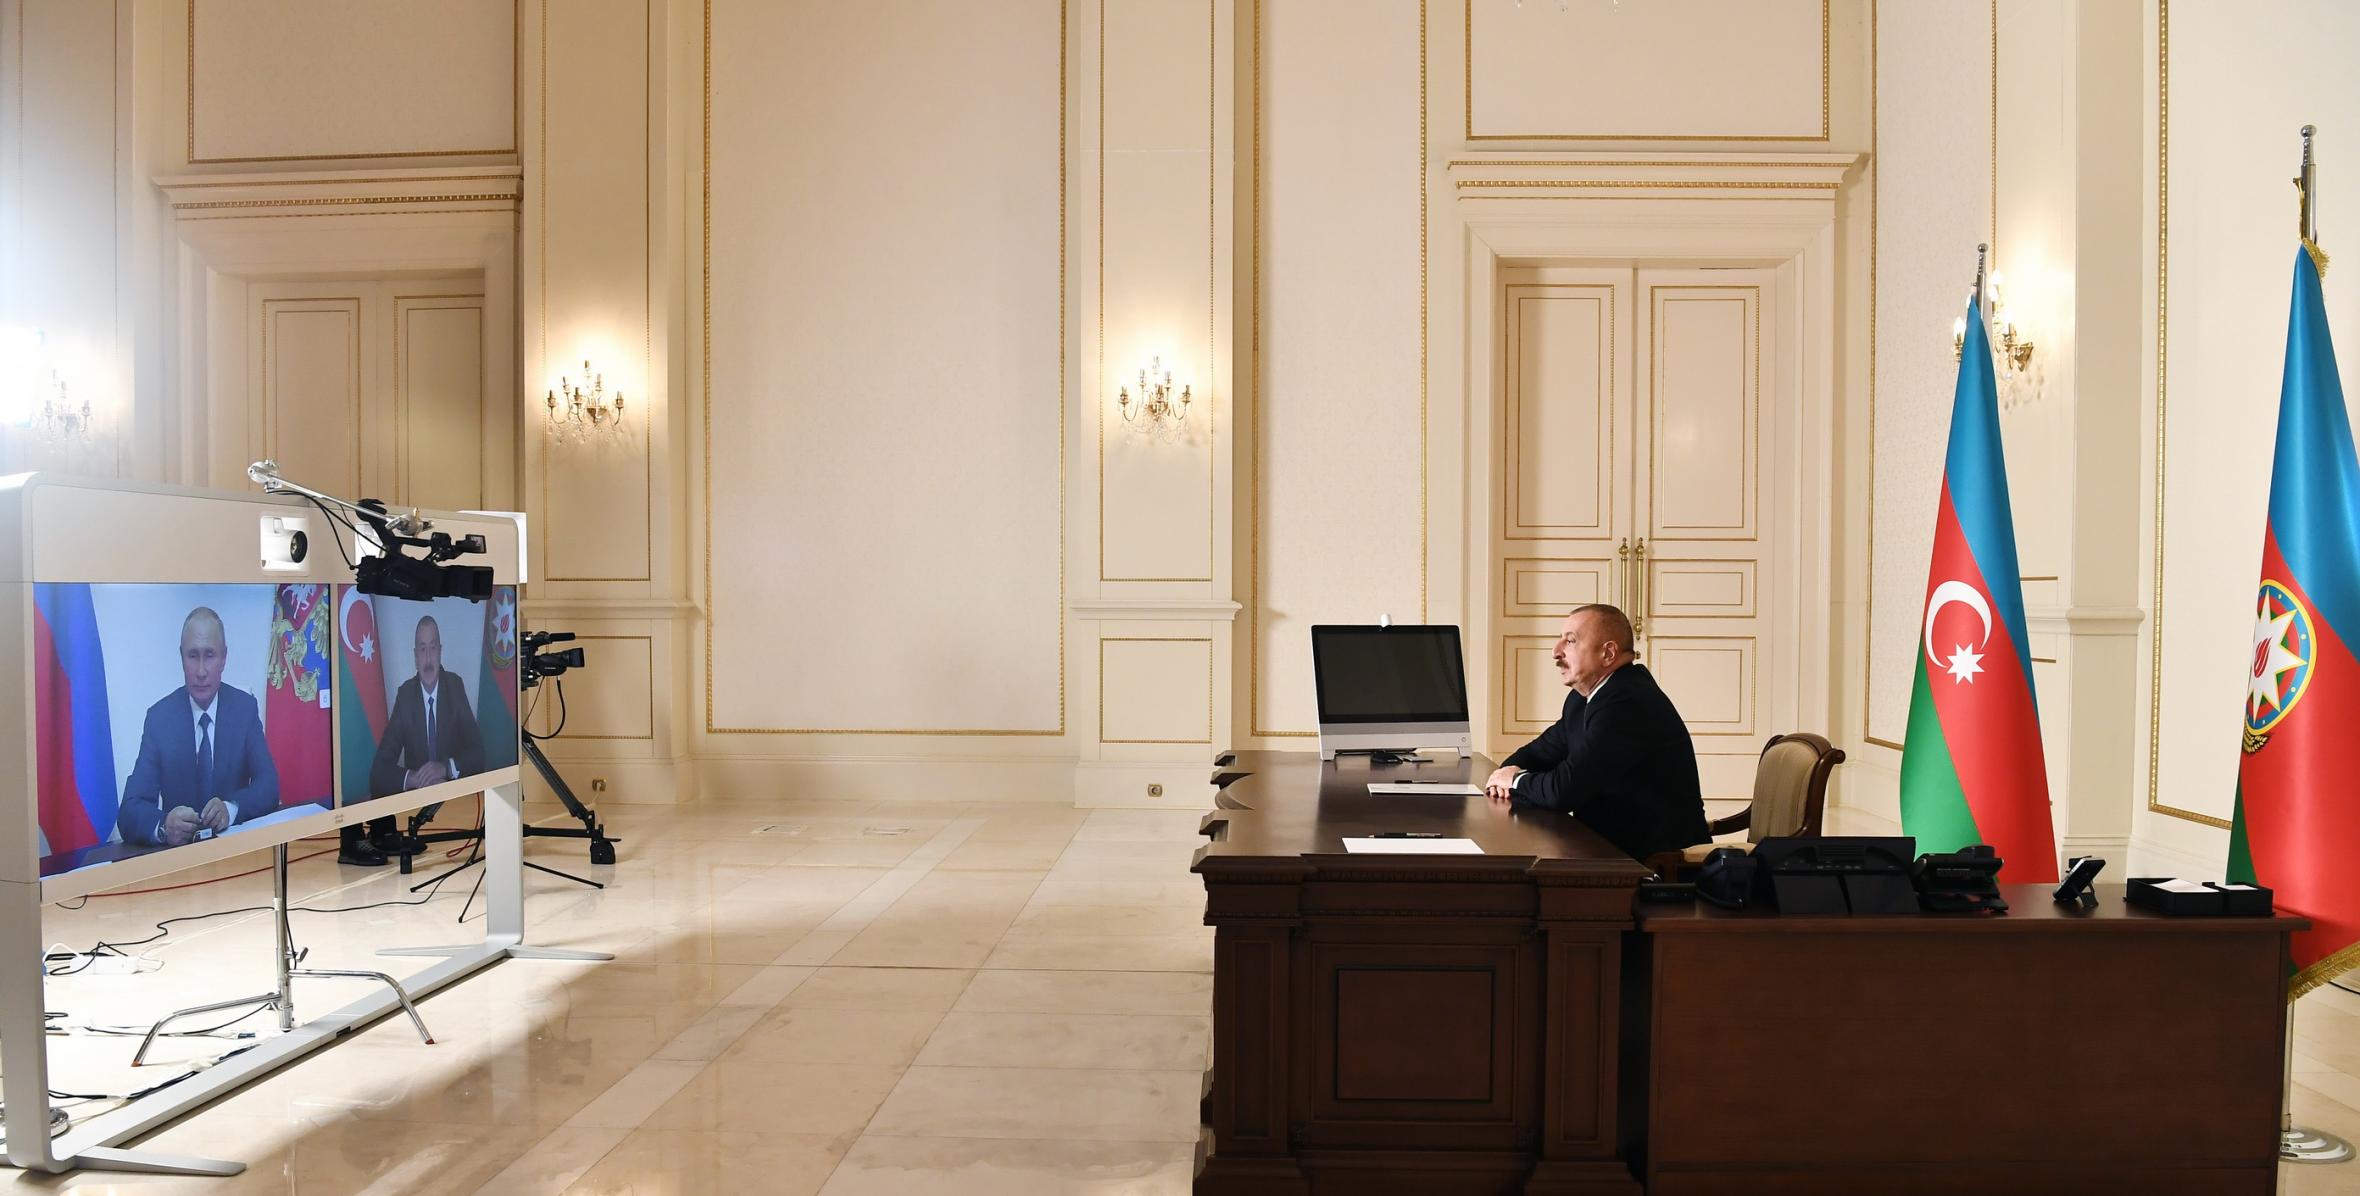 İlham Əliyev və Rusiya Prezidenti Vladimir Putin videokonfrans formatında görüşüblər